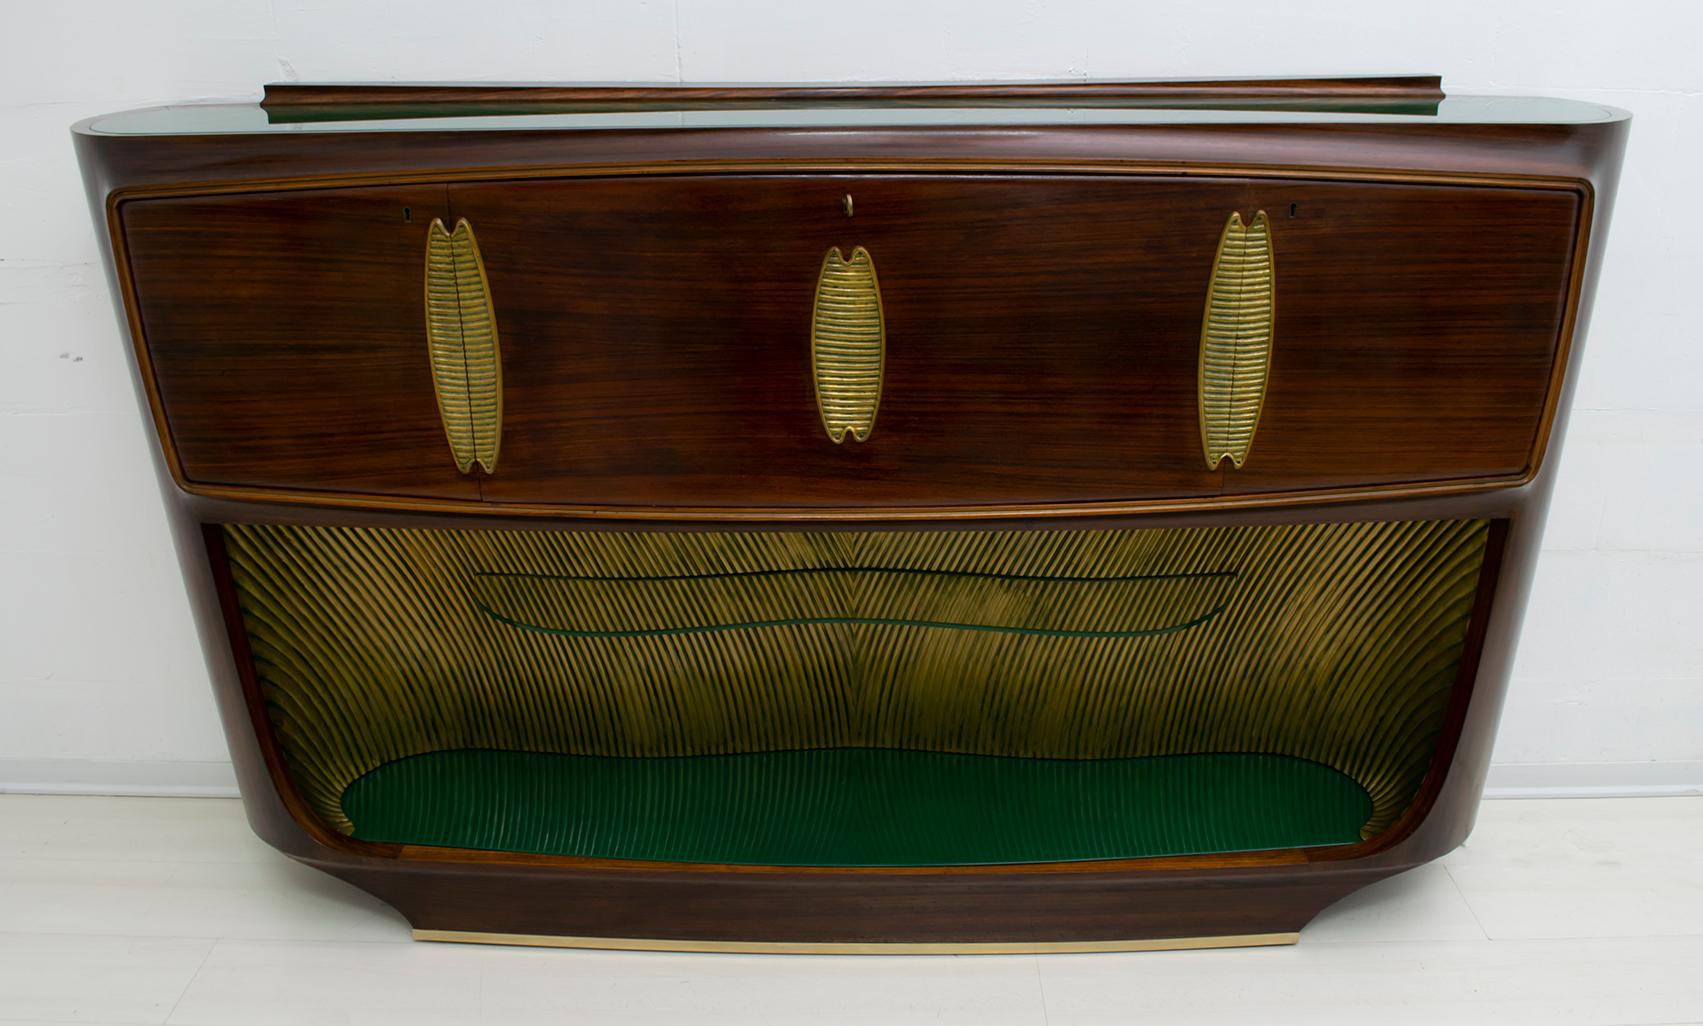 Ce meuble de bar a été conçu par le célèbre designer italien Vittorio Dassi, Italie 1950, le meuble est en noyer et les dessus en verre vert, la partie interne en dessous est en bois sculpté et doré avec des nuances de vert, la base a une finition